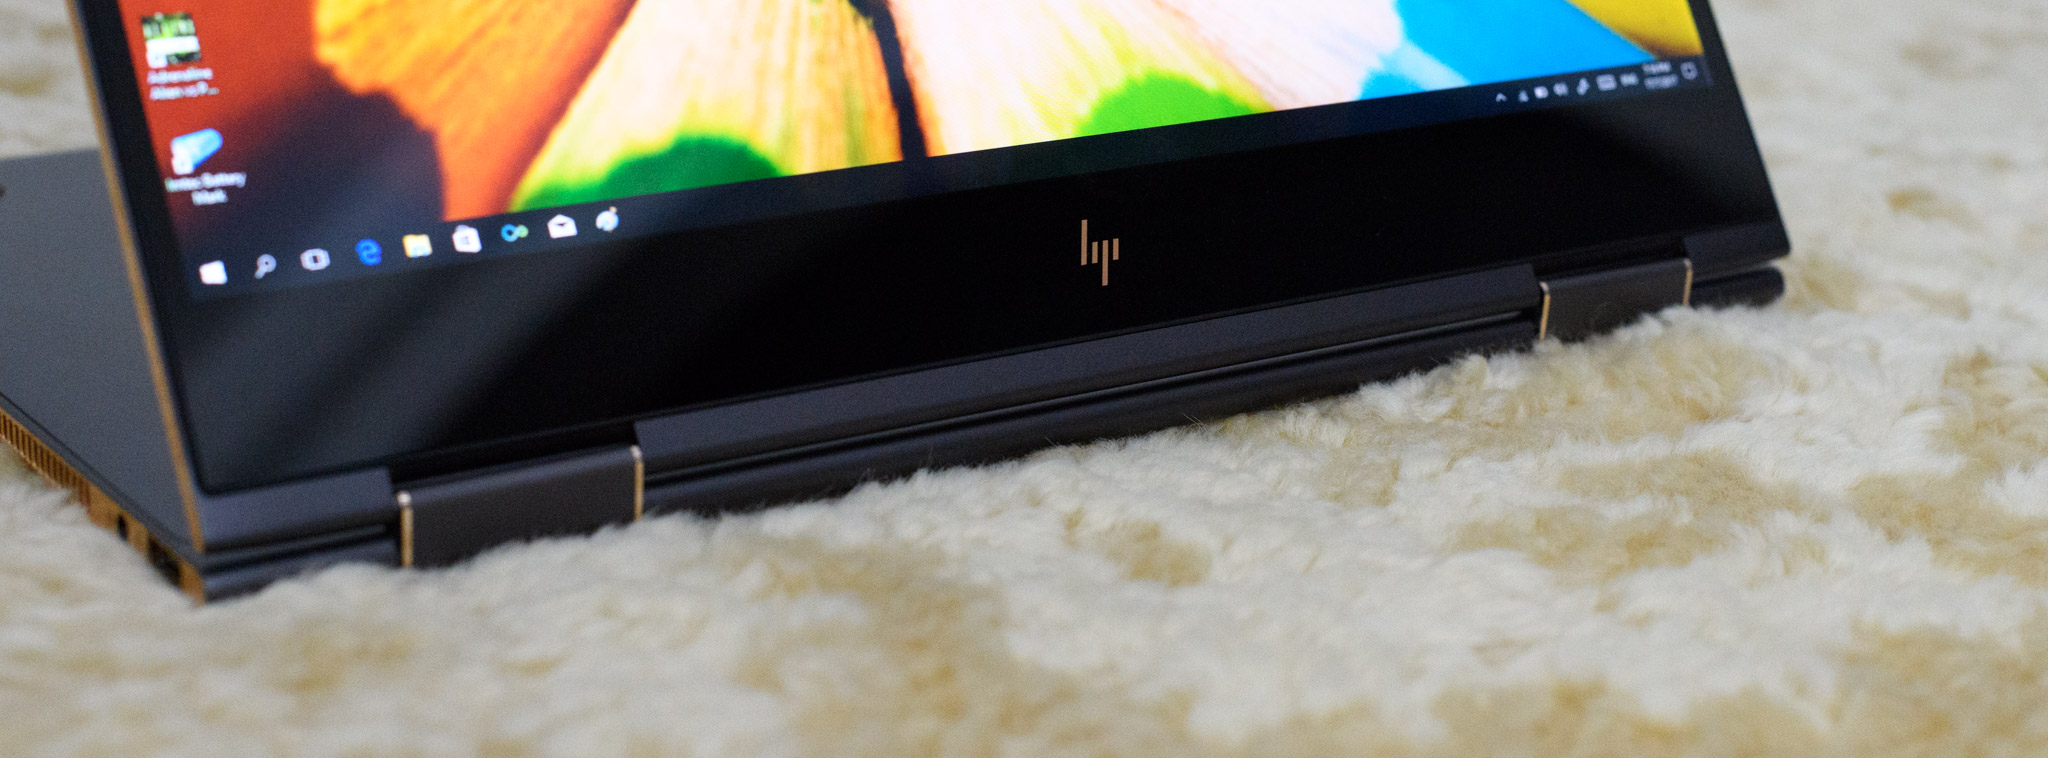 Đánh giá HP Spectre x360 – Mỏng nhẹ, dáng đẹp, màn hình xoay 360 độ [HOT]